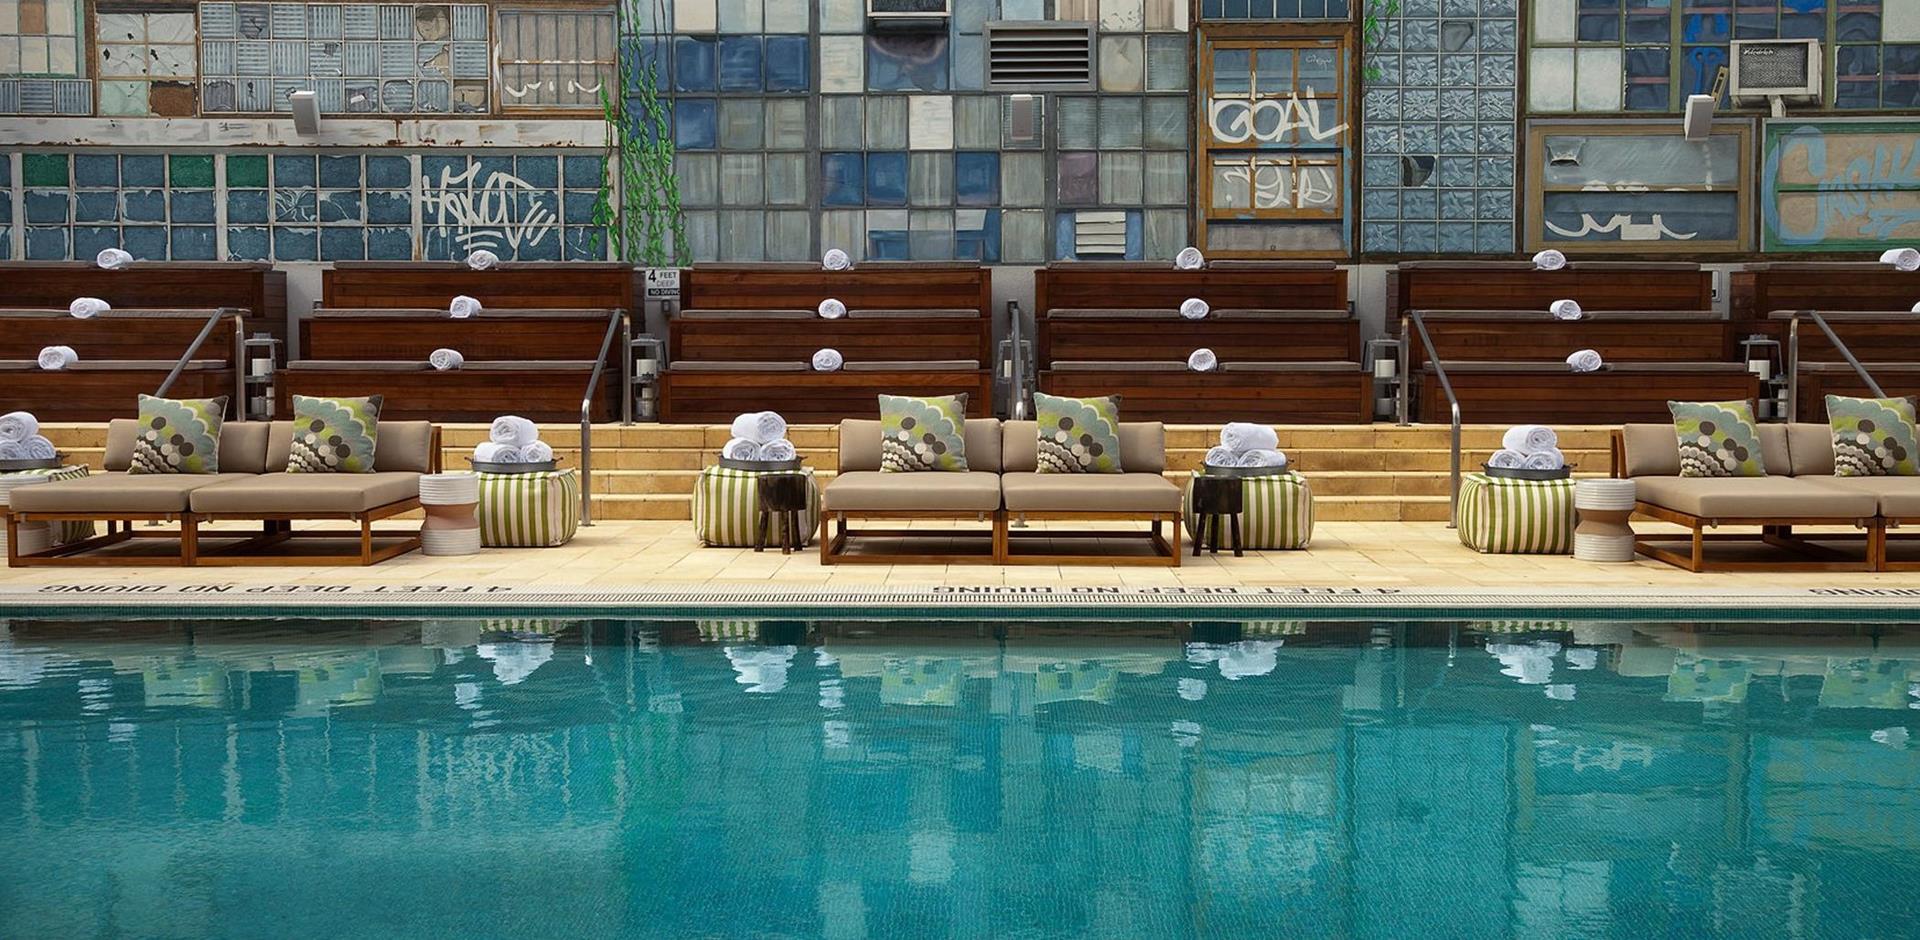 McCarren Hotel and Pool Brooklyn